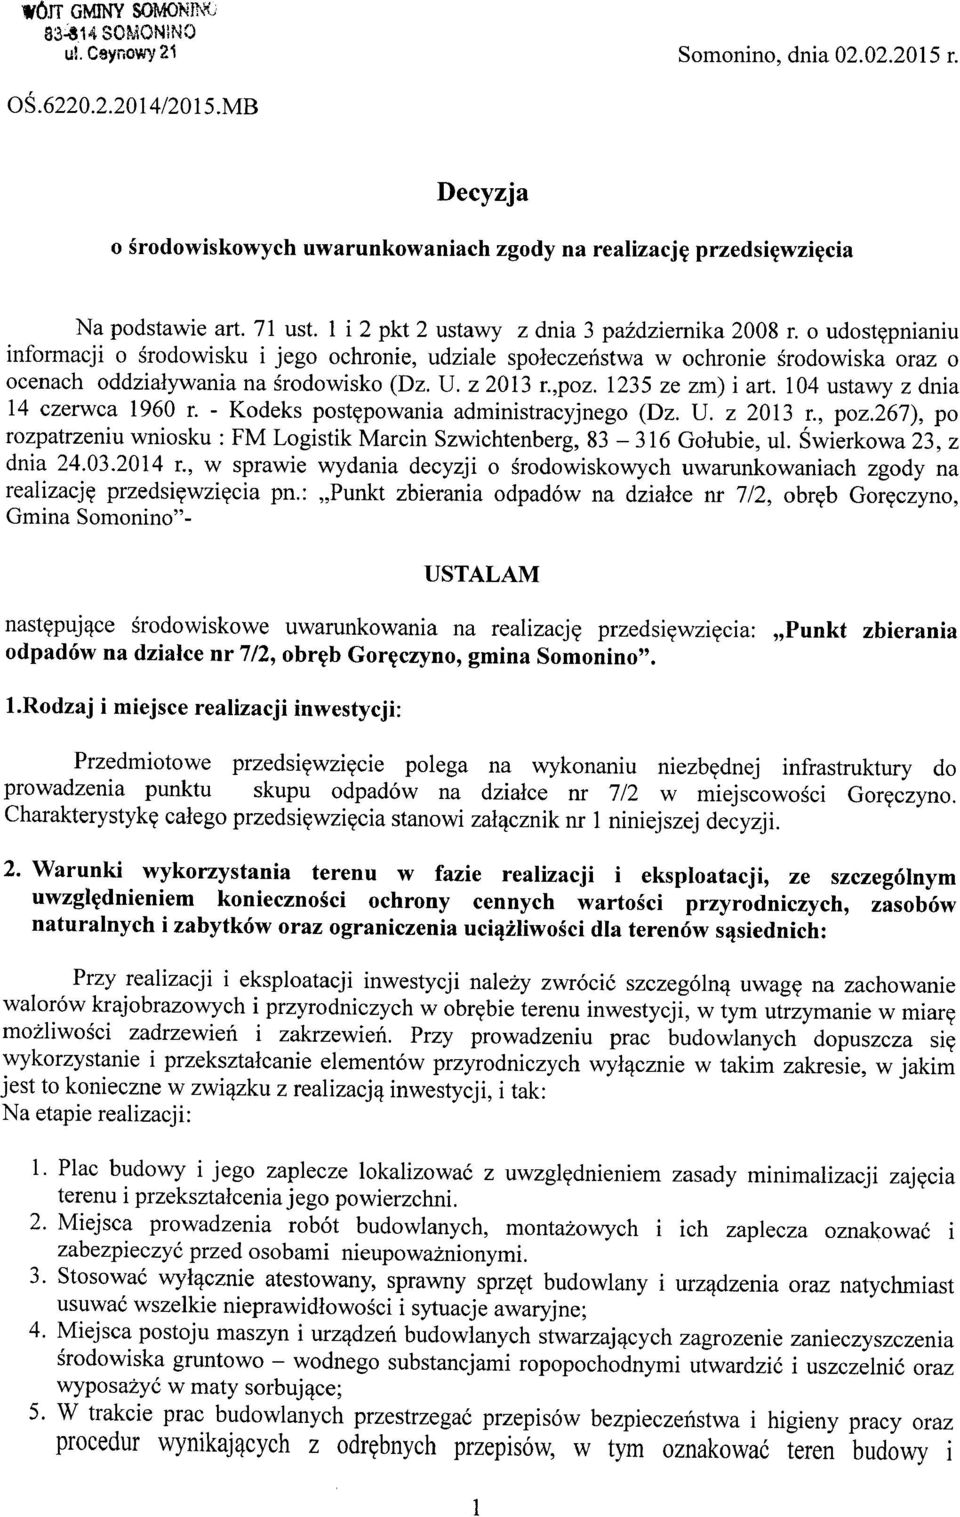 104 ustawy z dnia 14 czerwca 1960 r. - Kodeks postępowania administracyjnego (Dz. U. z 2013 r., poz.267), po rozpatrzeniu wniosku: FM Logistik Marcin Szwichtenberg, 83-316 Gołubie, ul.